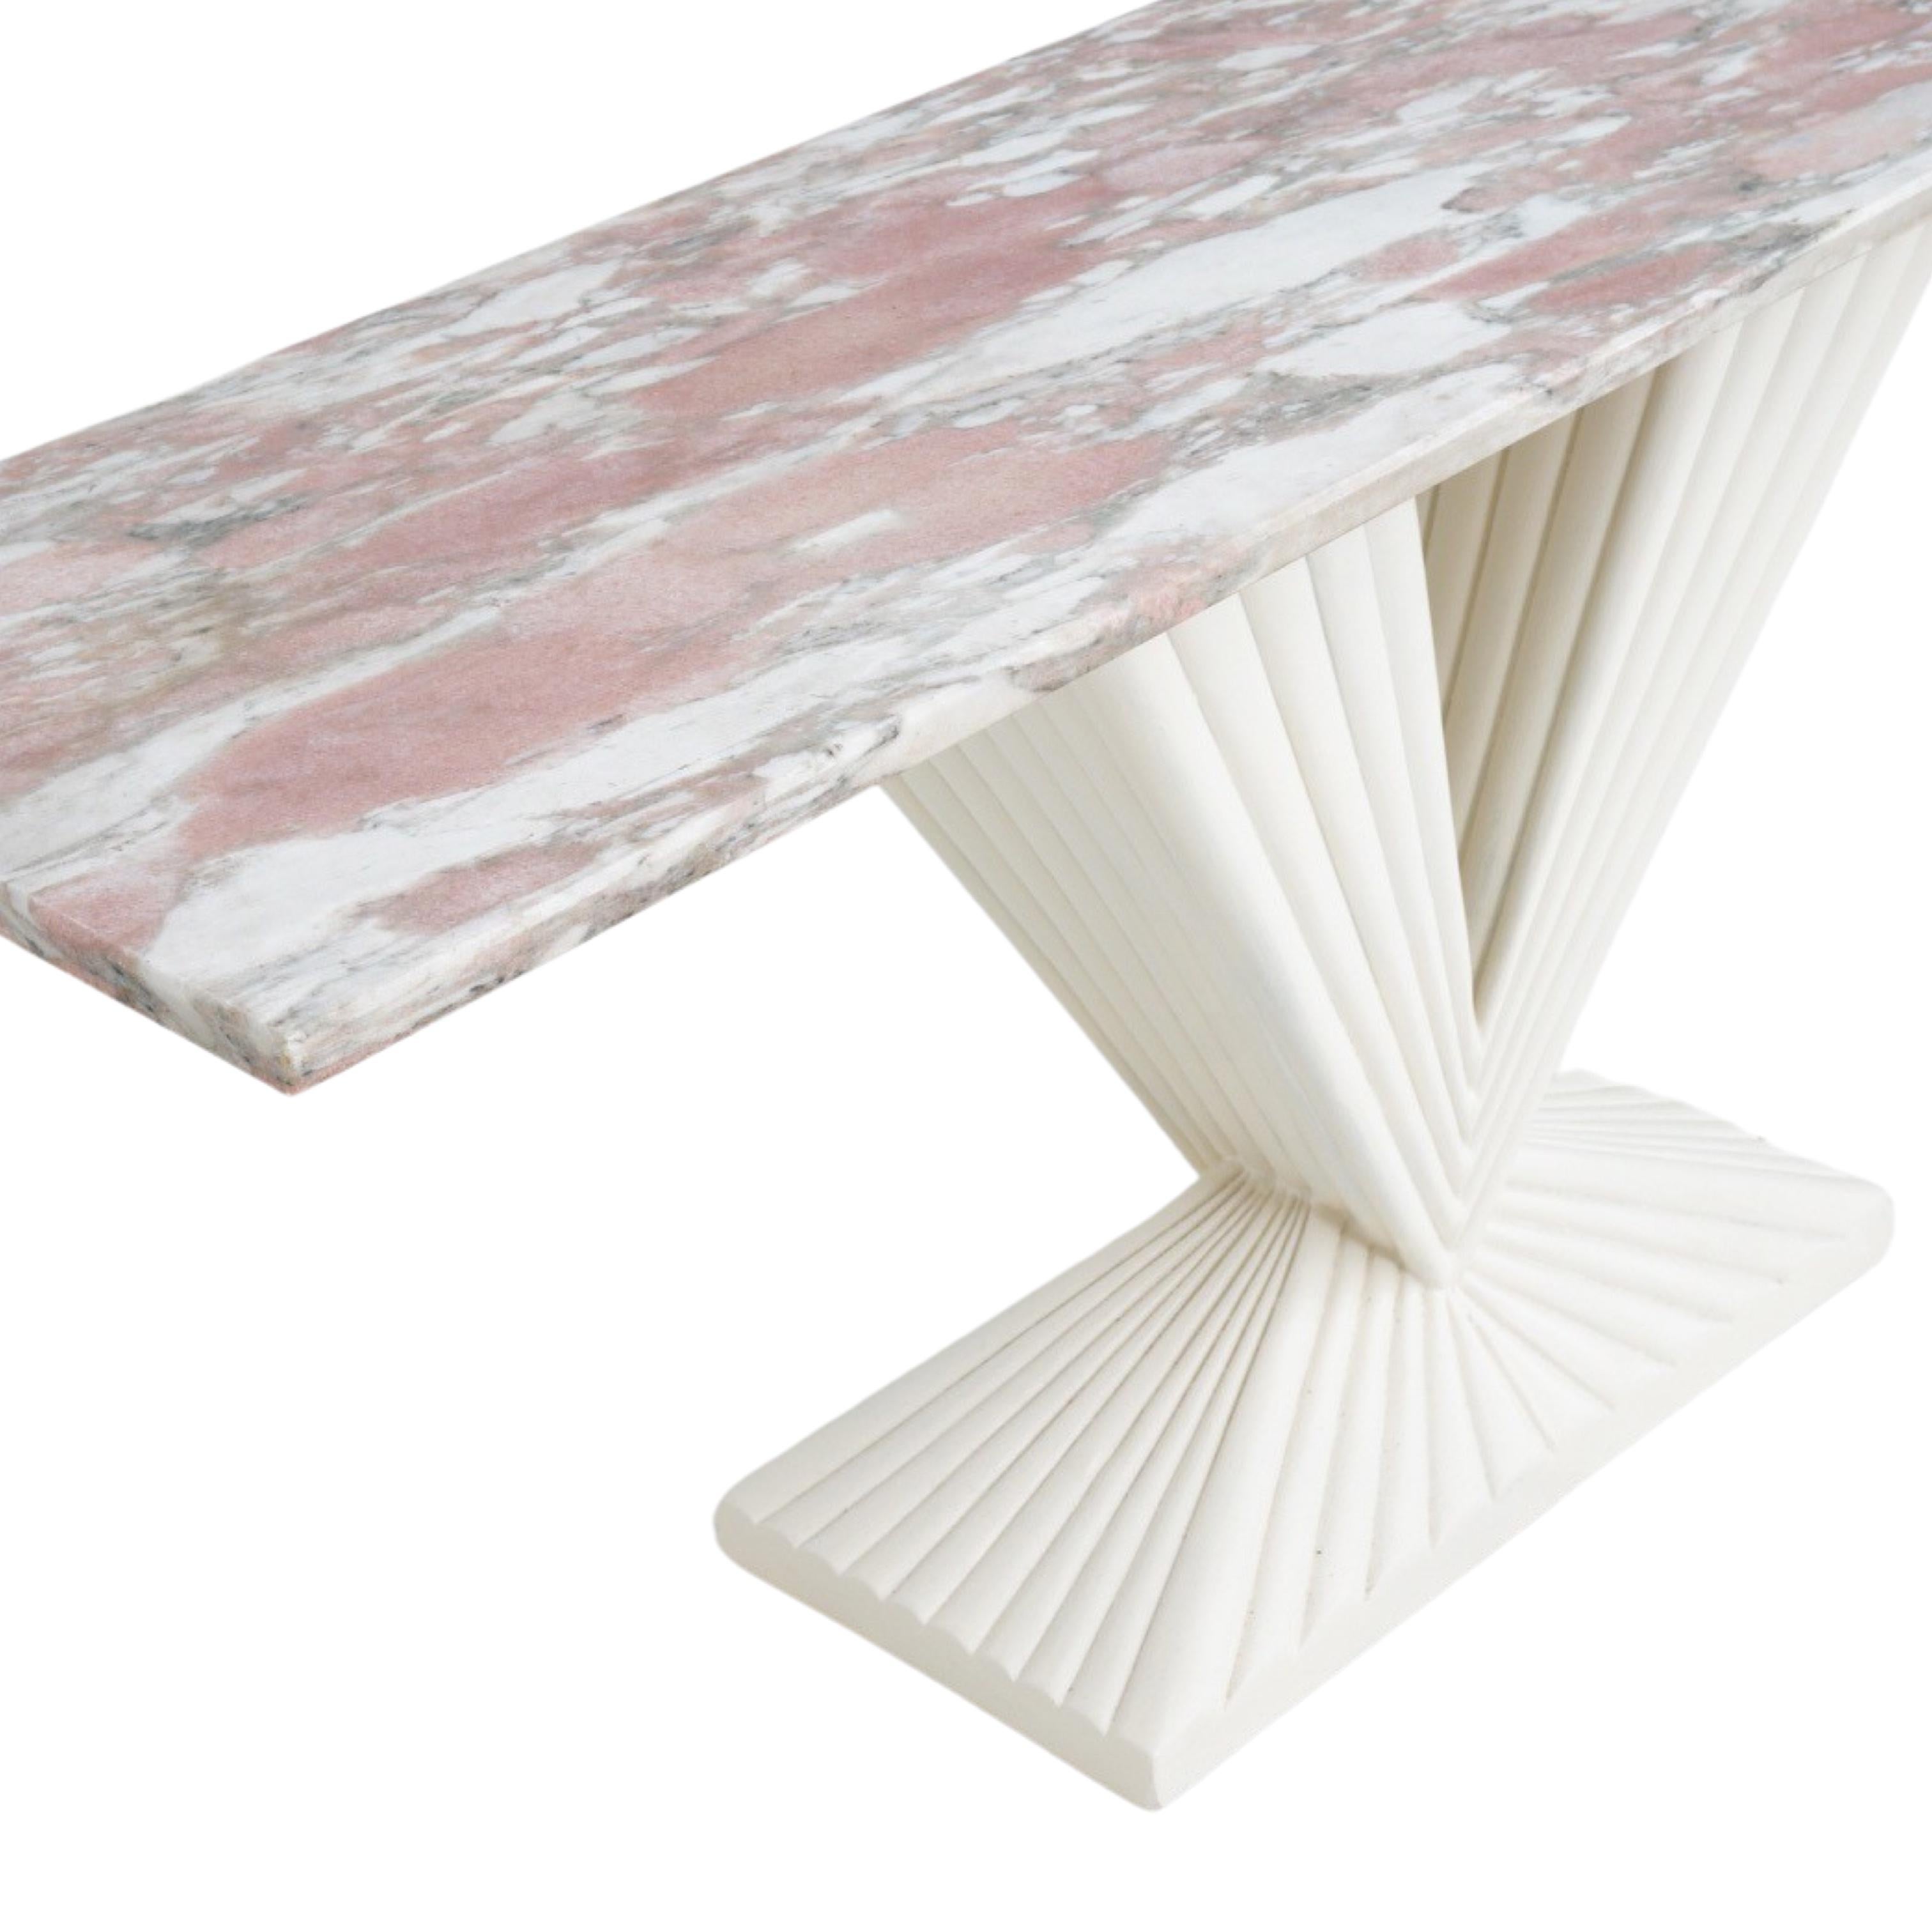 Avec sa teinte bubblegum et son plateau en marbre aux veines complexes, cette table console trouve un équilibre délicat entre flamboyance et élégance. Le marbre veiné, avec un doux mélange de couleurs et de veines fluides, crée un sentiment de